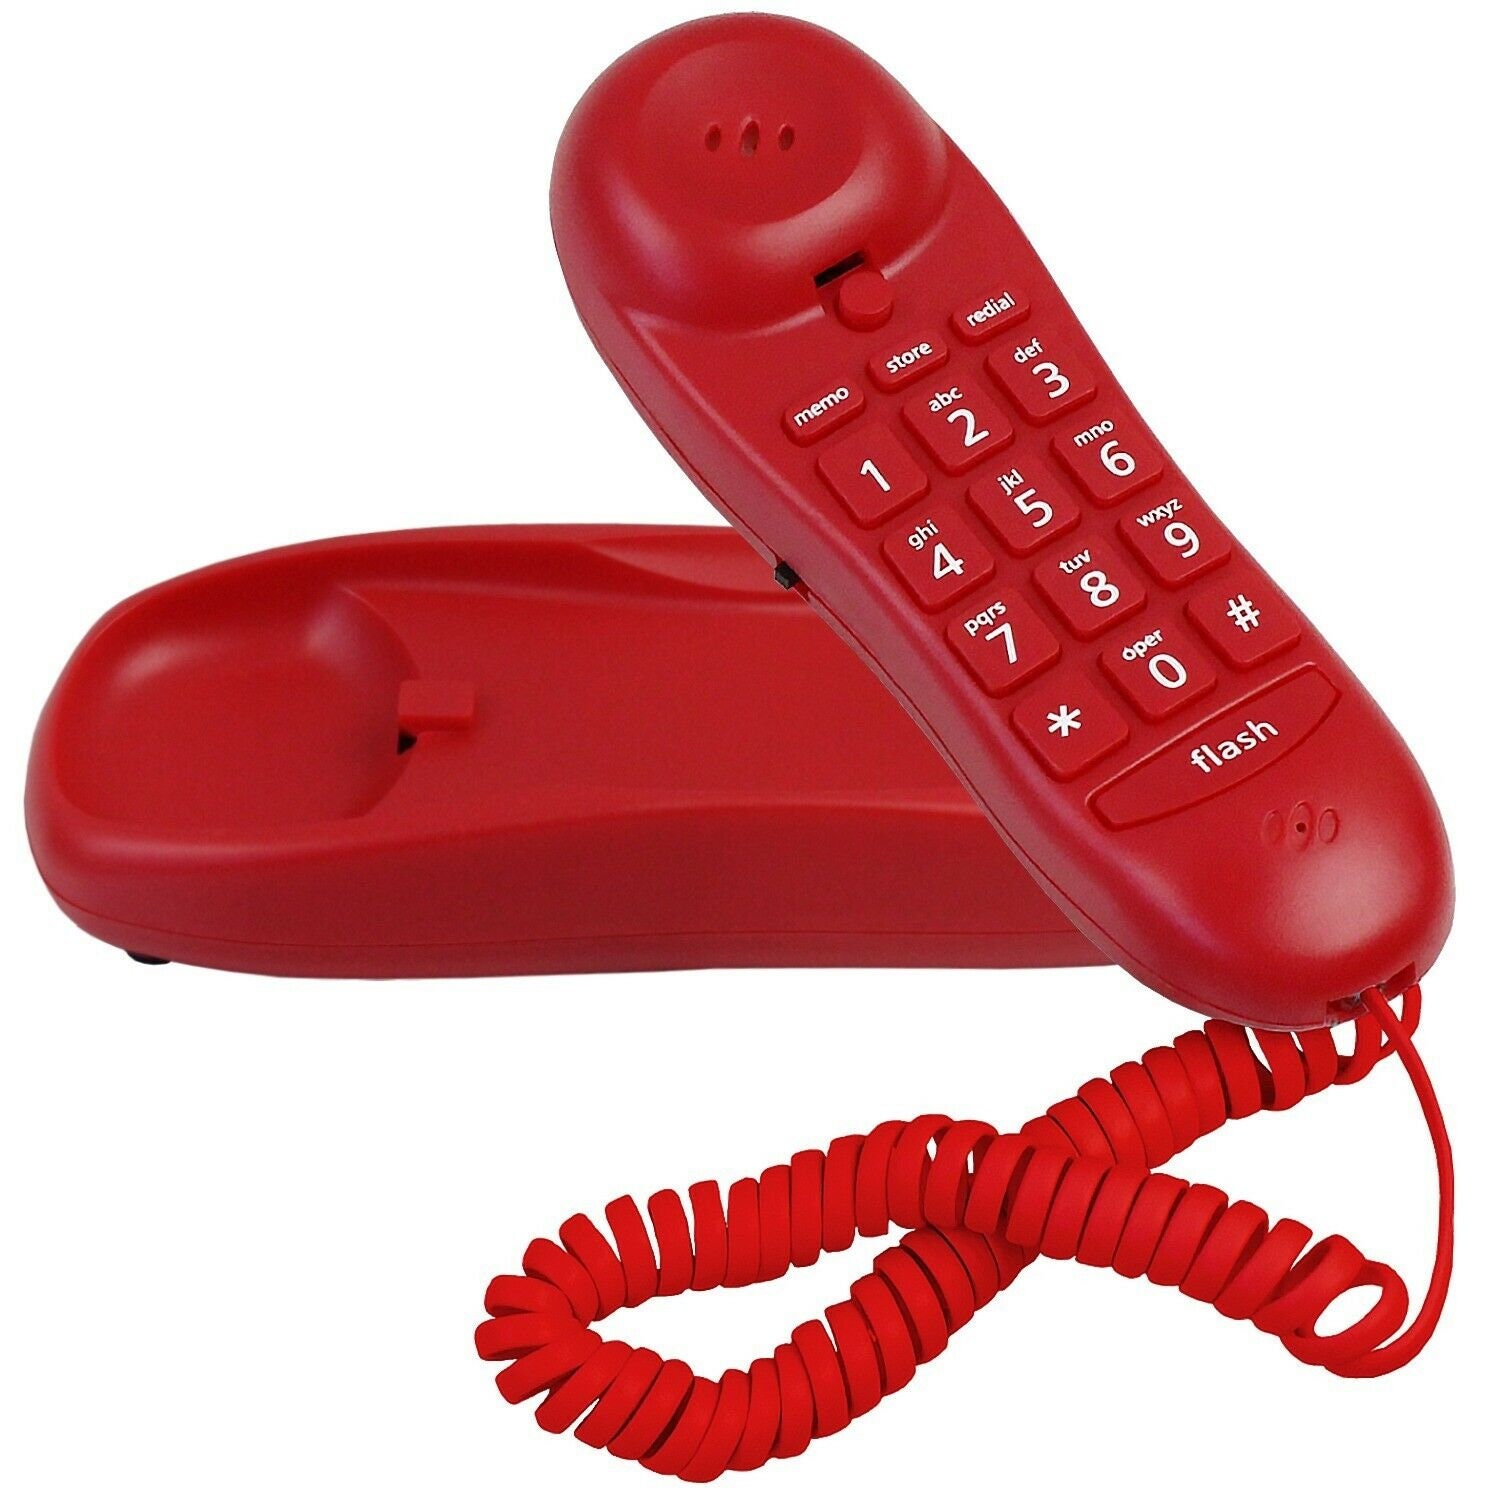 Телефон 60 10 10. M12 телефон. Современный телефон трубка Deluxe Slimline. Игрушка телефон кнопочный фиолетовый.